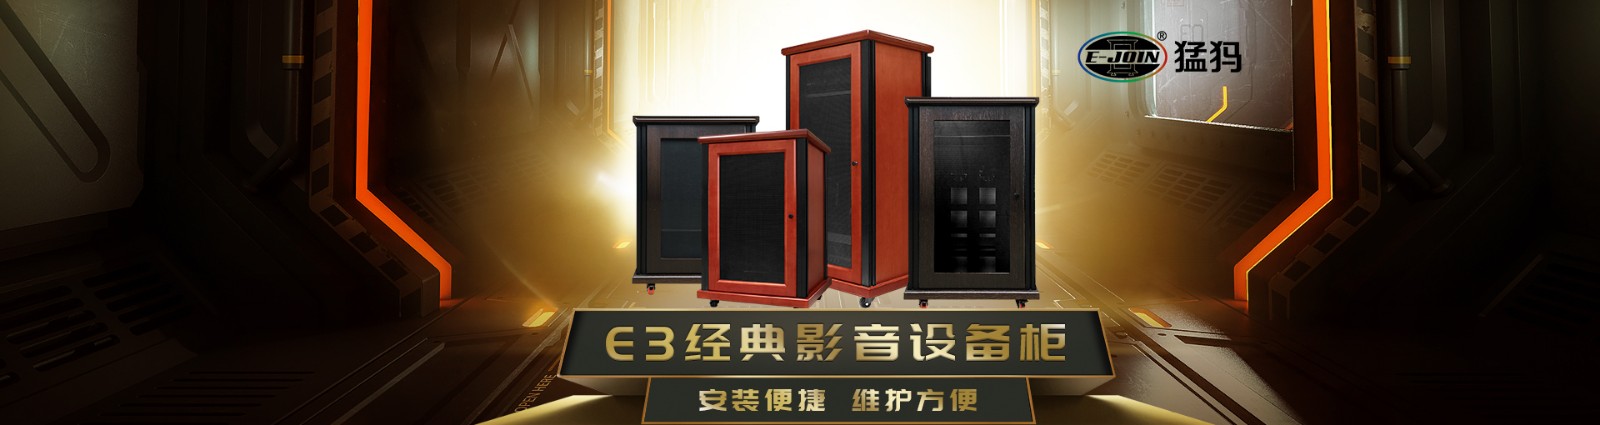 E-JOIN猛犸机柜E3-J1380H专业影音音箱设备柜功放机柜音箱机架实木板材定制机柜